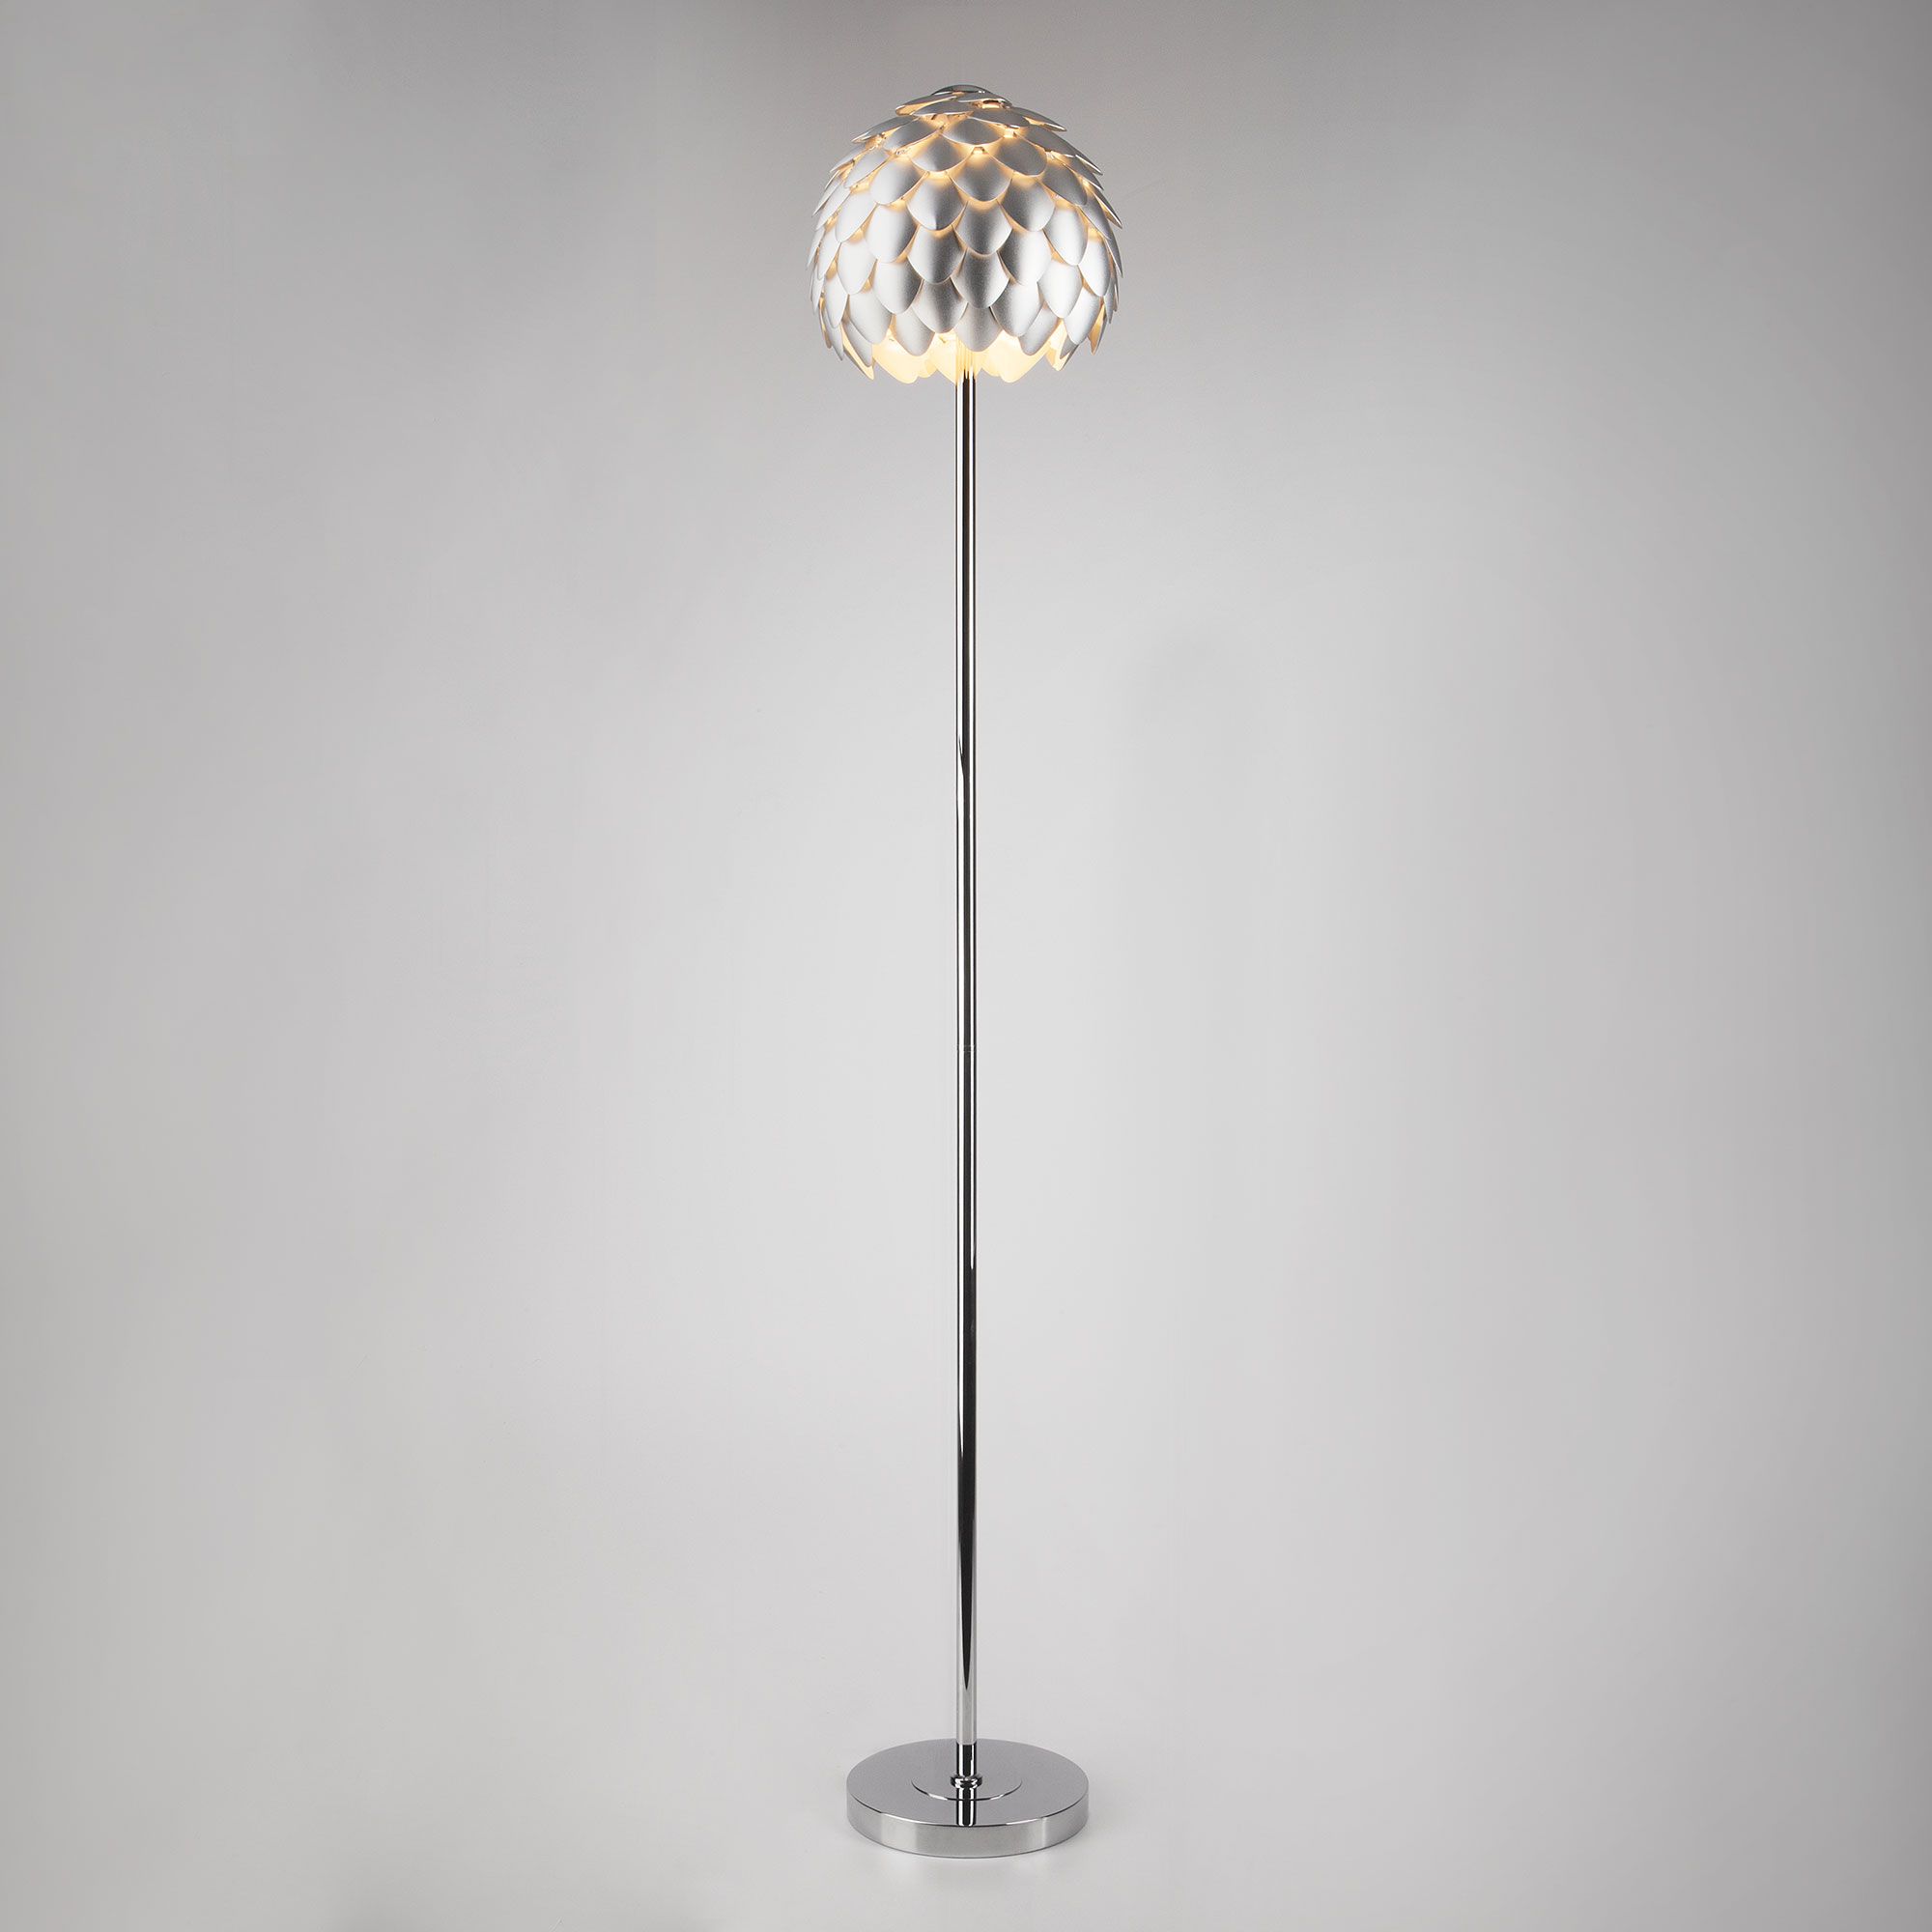 Напольный светильник с металлическим плафоном Bogate's Cedro 01100/1 серебряный / хром. Фото 1